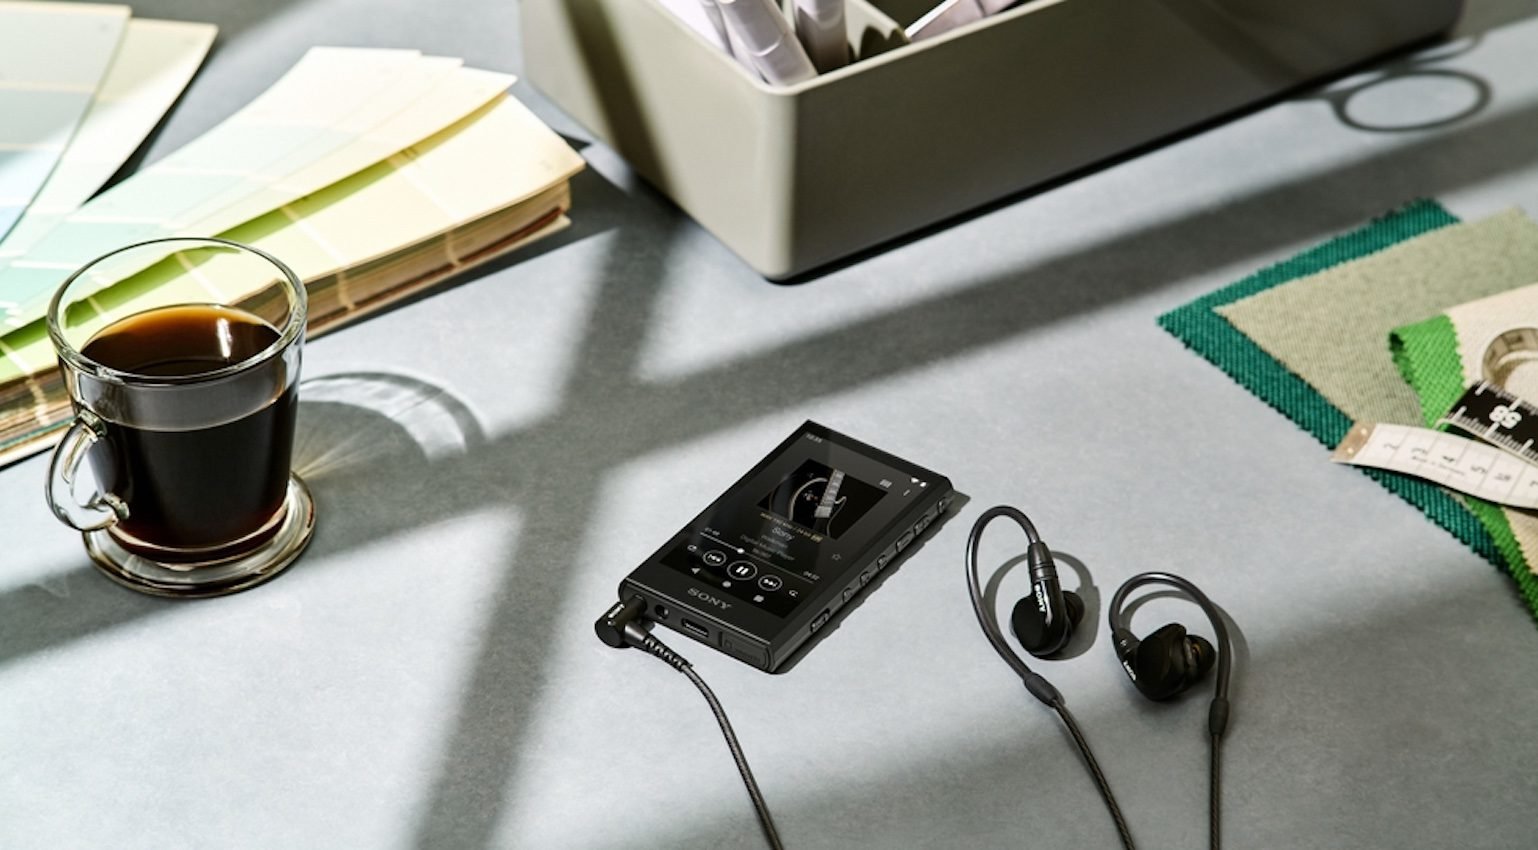 O novo Walkman da Sony traz um dose de nostalgia para quem viveu a época da febre dos aparelhos musicais.